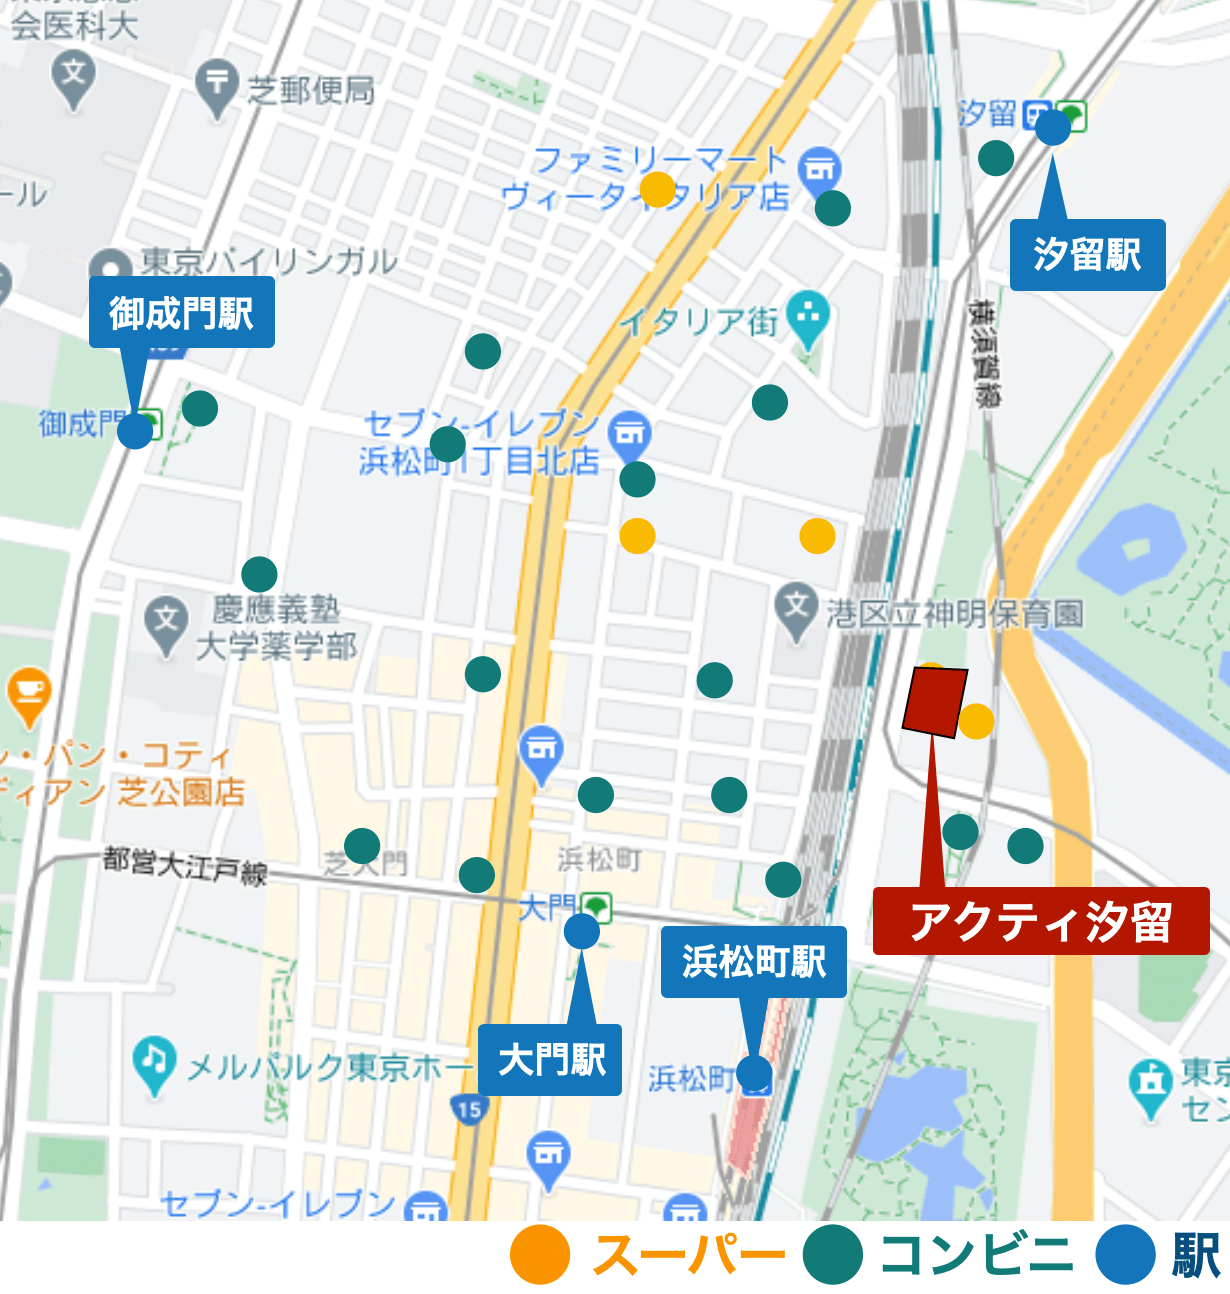 周辺の店舗を示したGoogleマップ